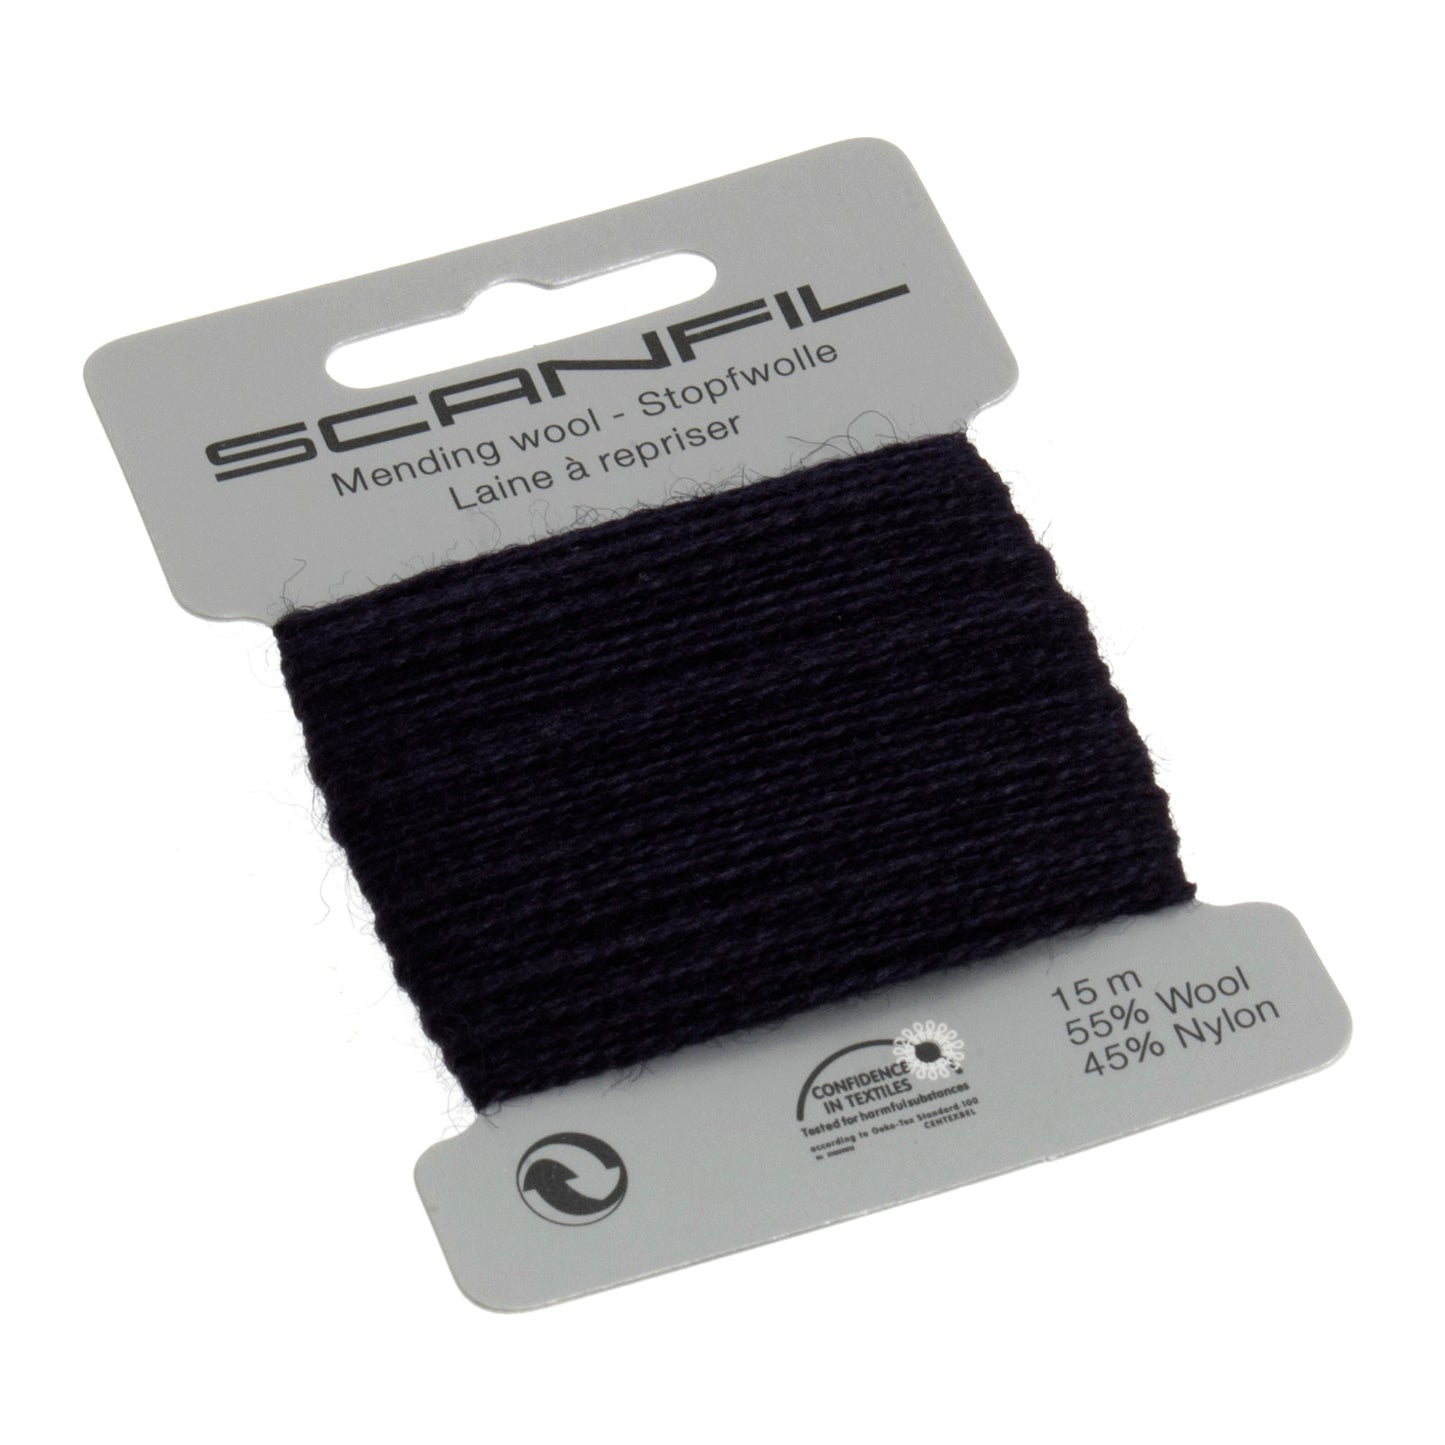 Scanfil - Mending Wool Thread - 15m - 082 Navy Blue